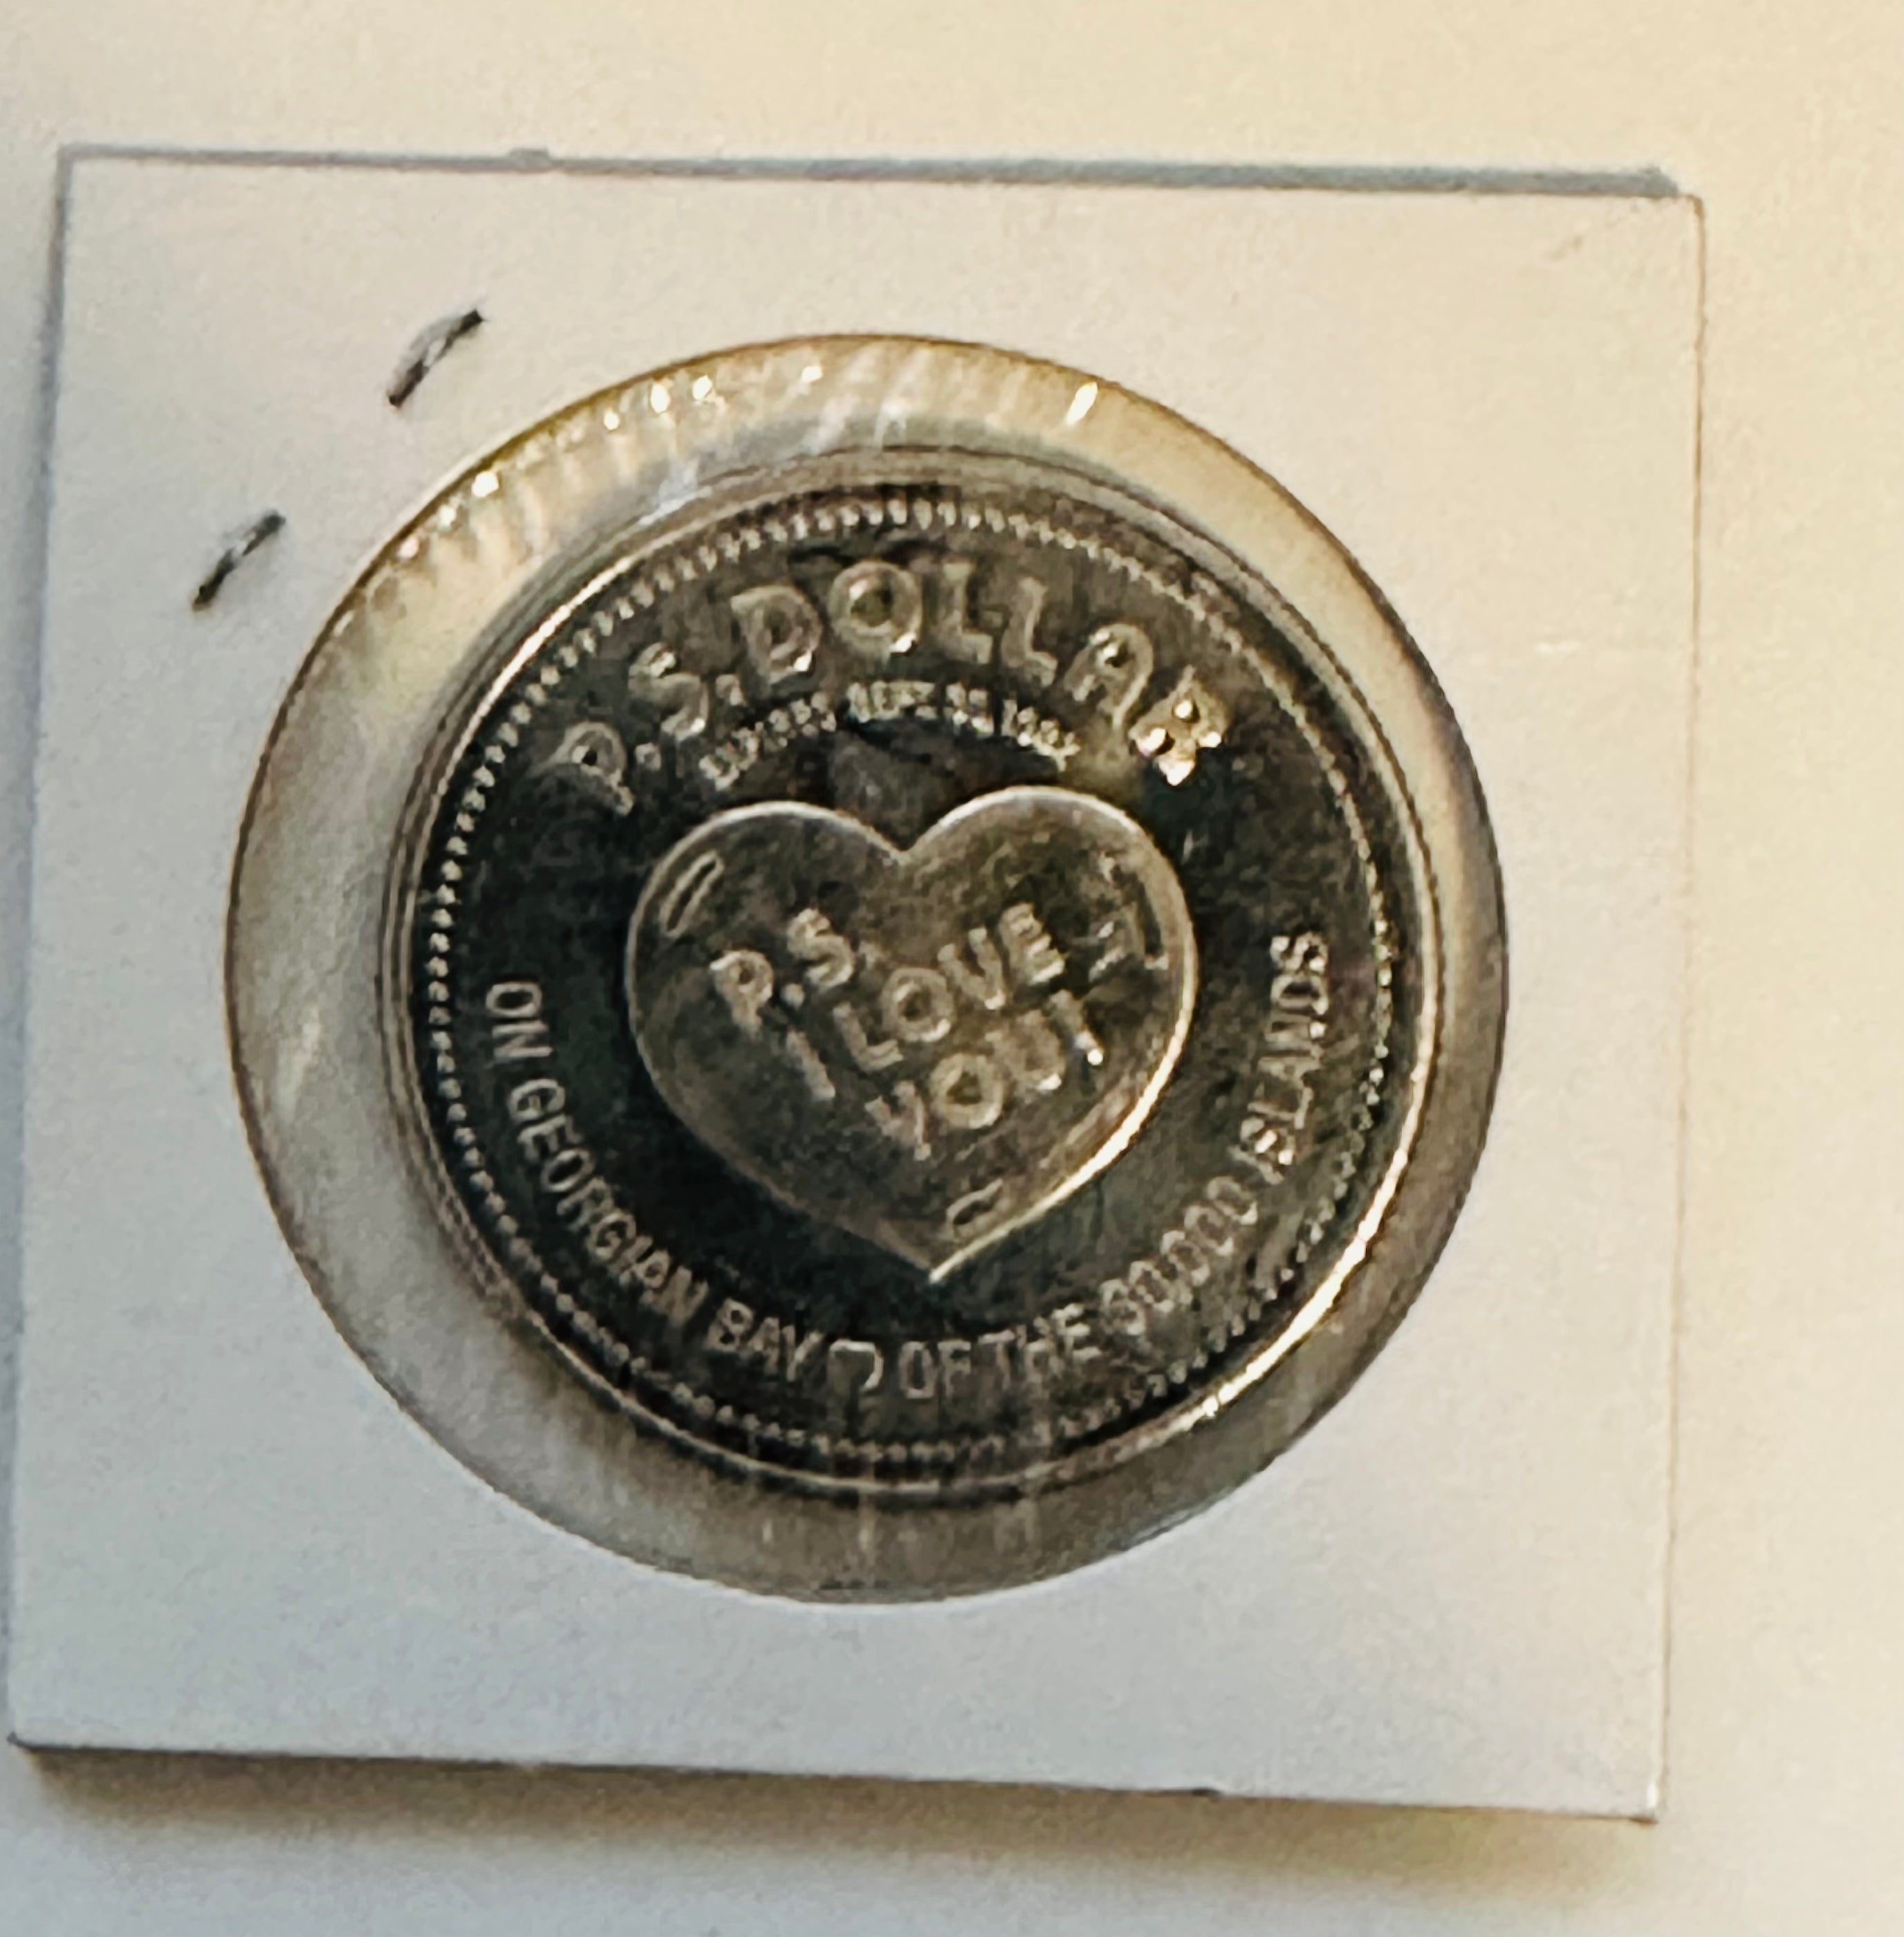 Bobby Orr rare hockey coin from 1980s